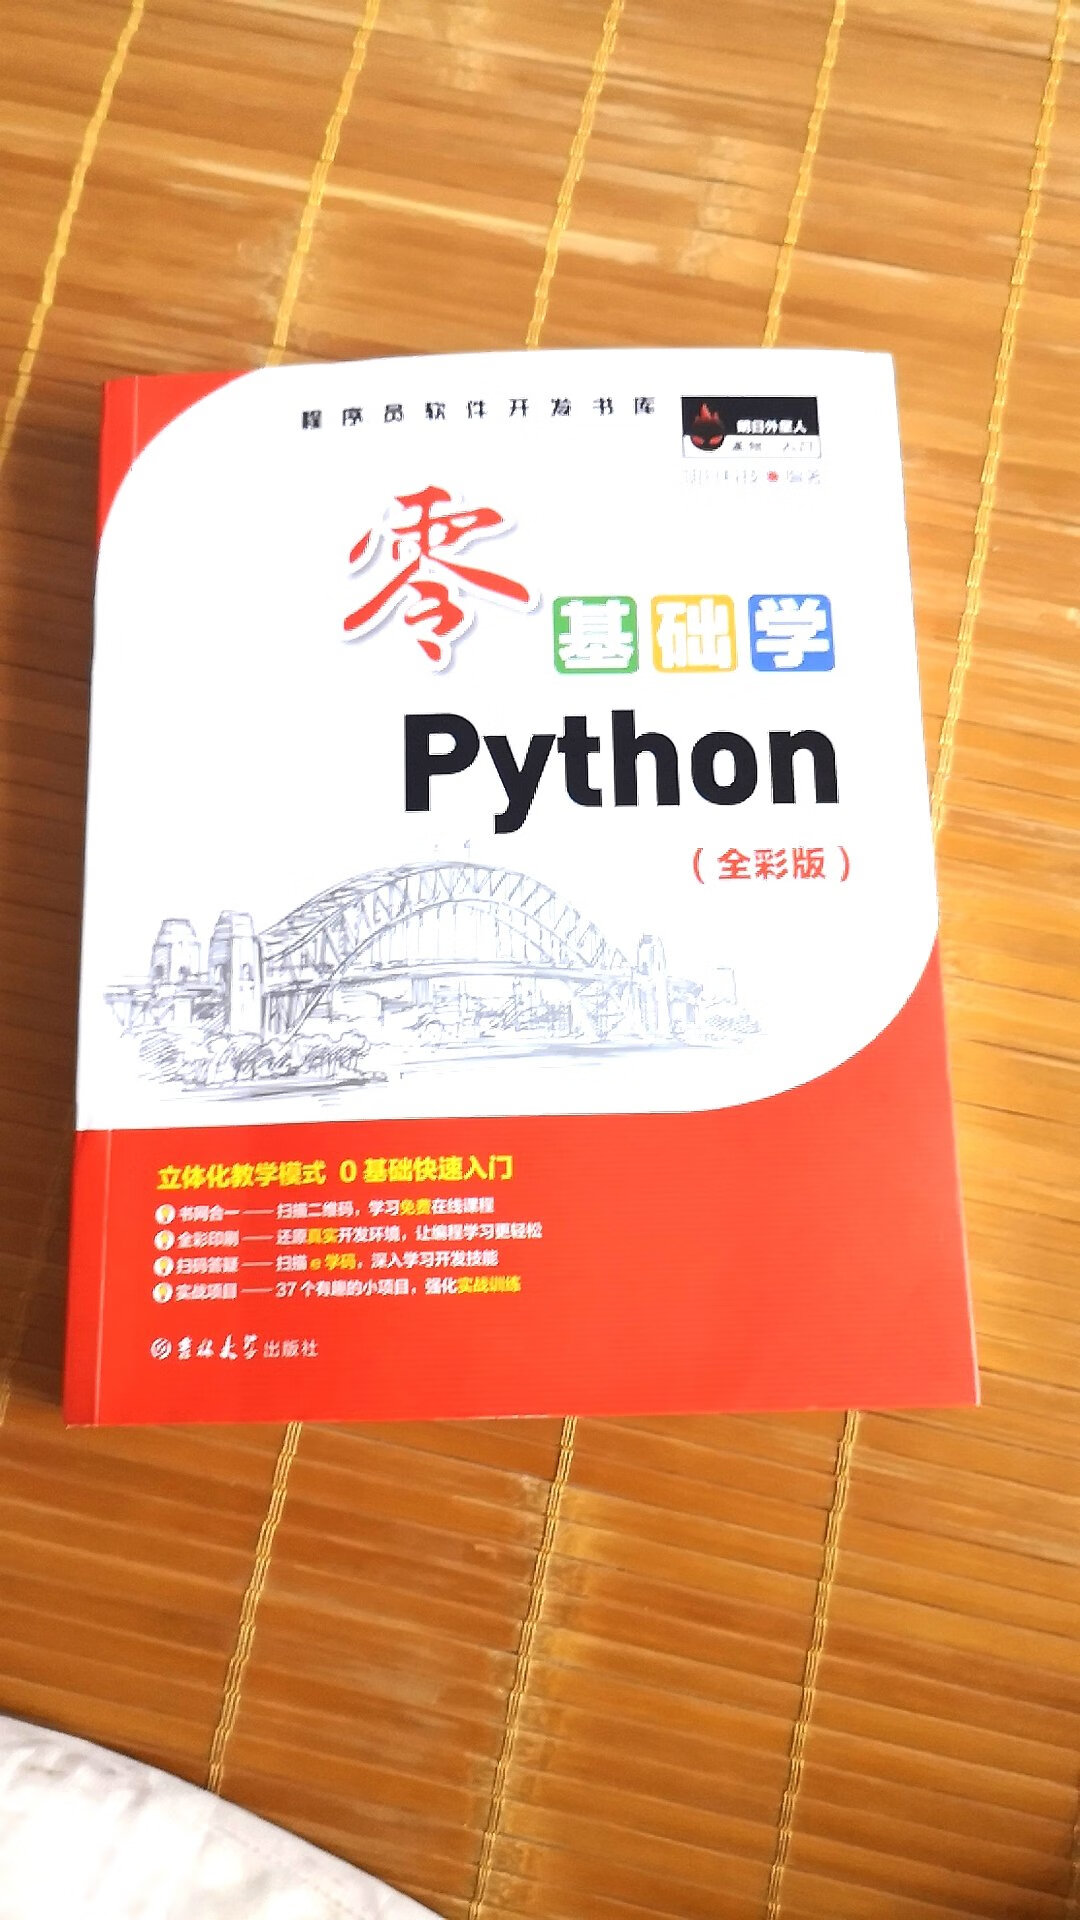 现在听说人工智能非常有前景，而且我对现在的工作也不是非常满意，陪家人的时间比较少吧，所以朋友推荐我学习一下python，因为未来ai人工智能会比较火吧，我也是没有一点这方面的经验，所以从买了关于学习python的书籍，这本零基础学python确实很不错，还有知识点的讲解，没看懂还可以看视频，确实很符合我这种编程小白，而且是全彩的，看着也很舒服，的确很不错哦，推荐一下